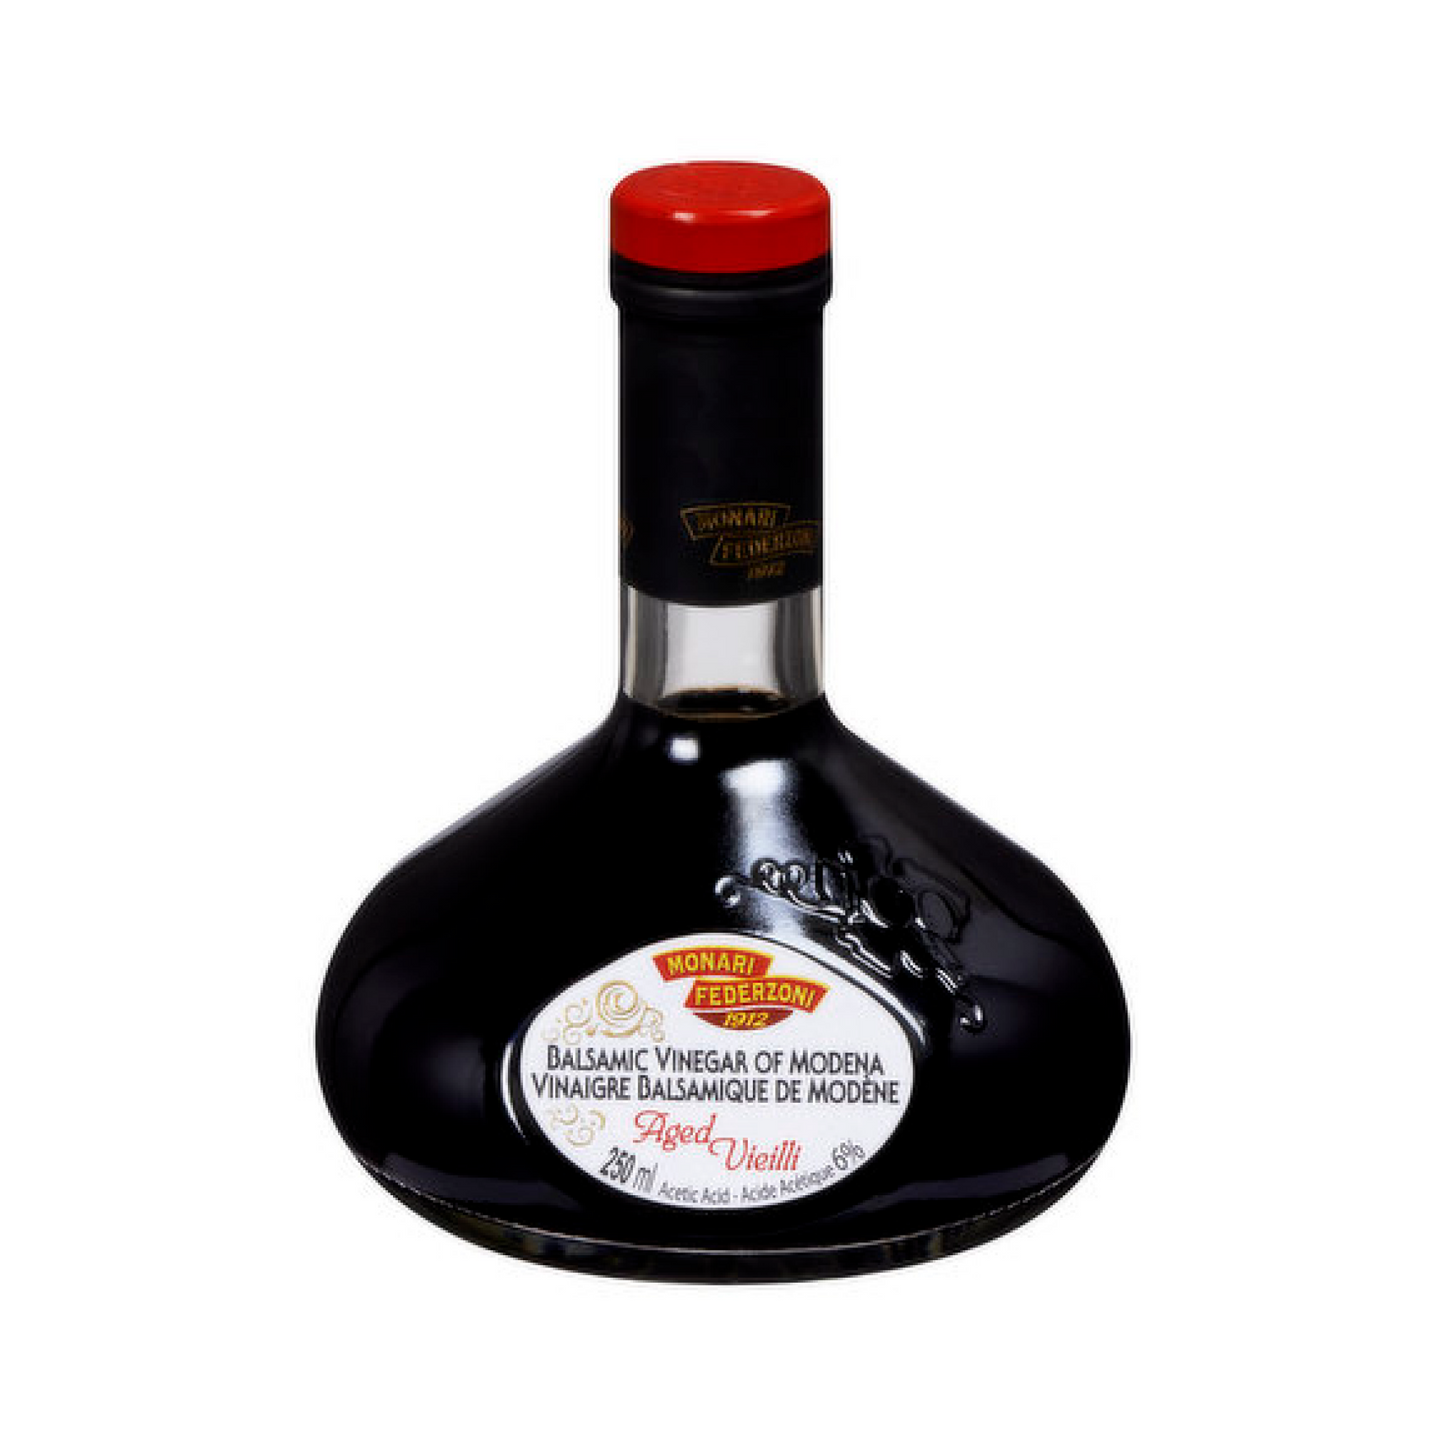 Monari Federzoni Aged Balsamic Vinegar of Modena 250ml